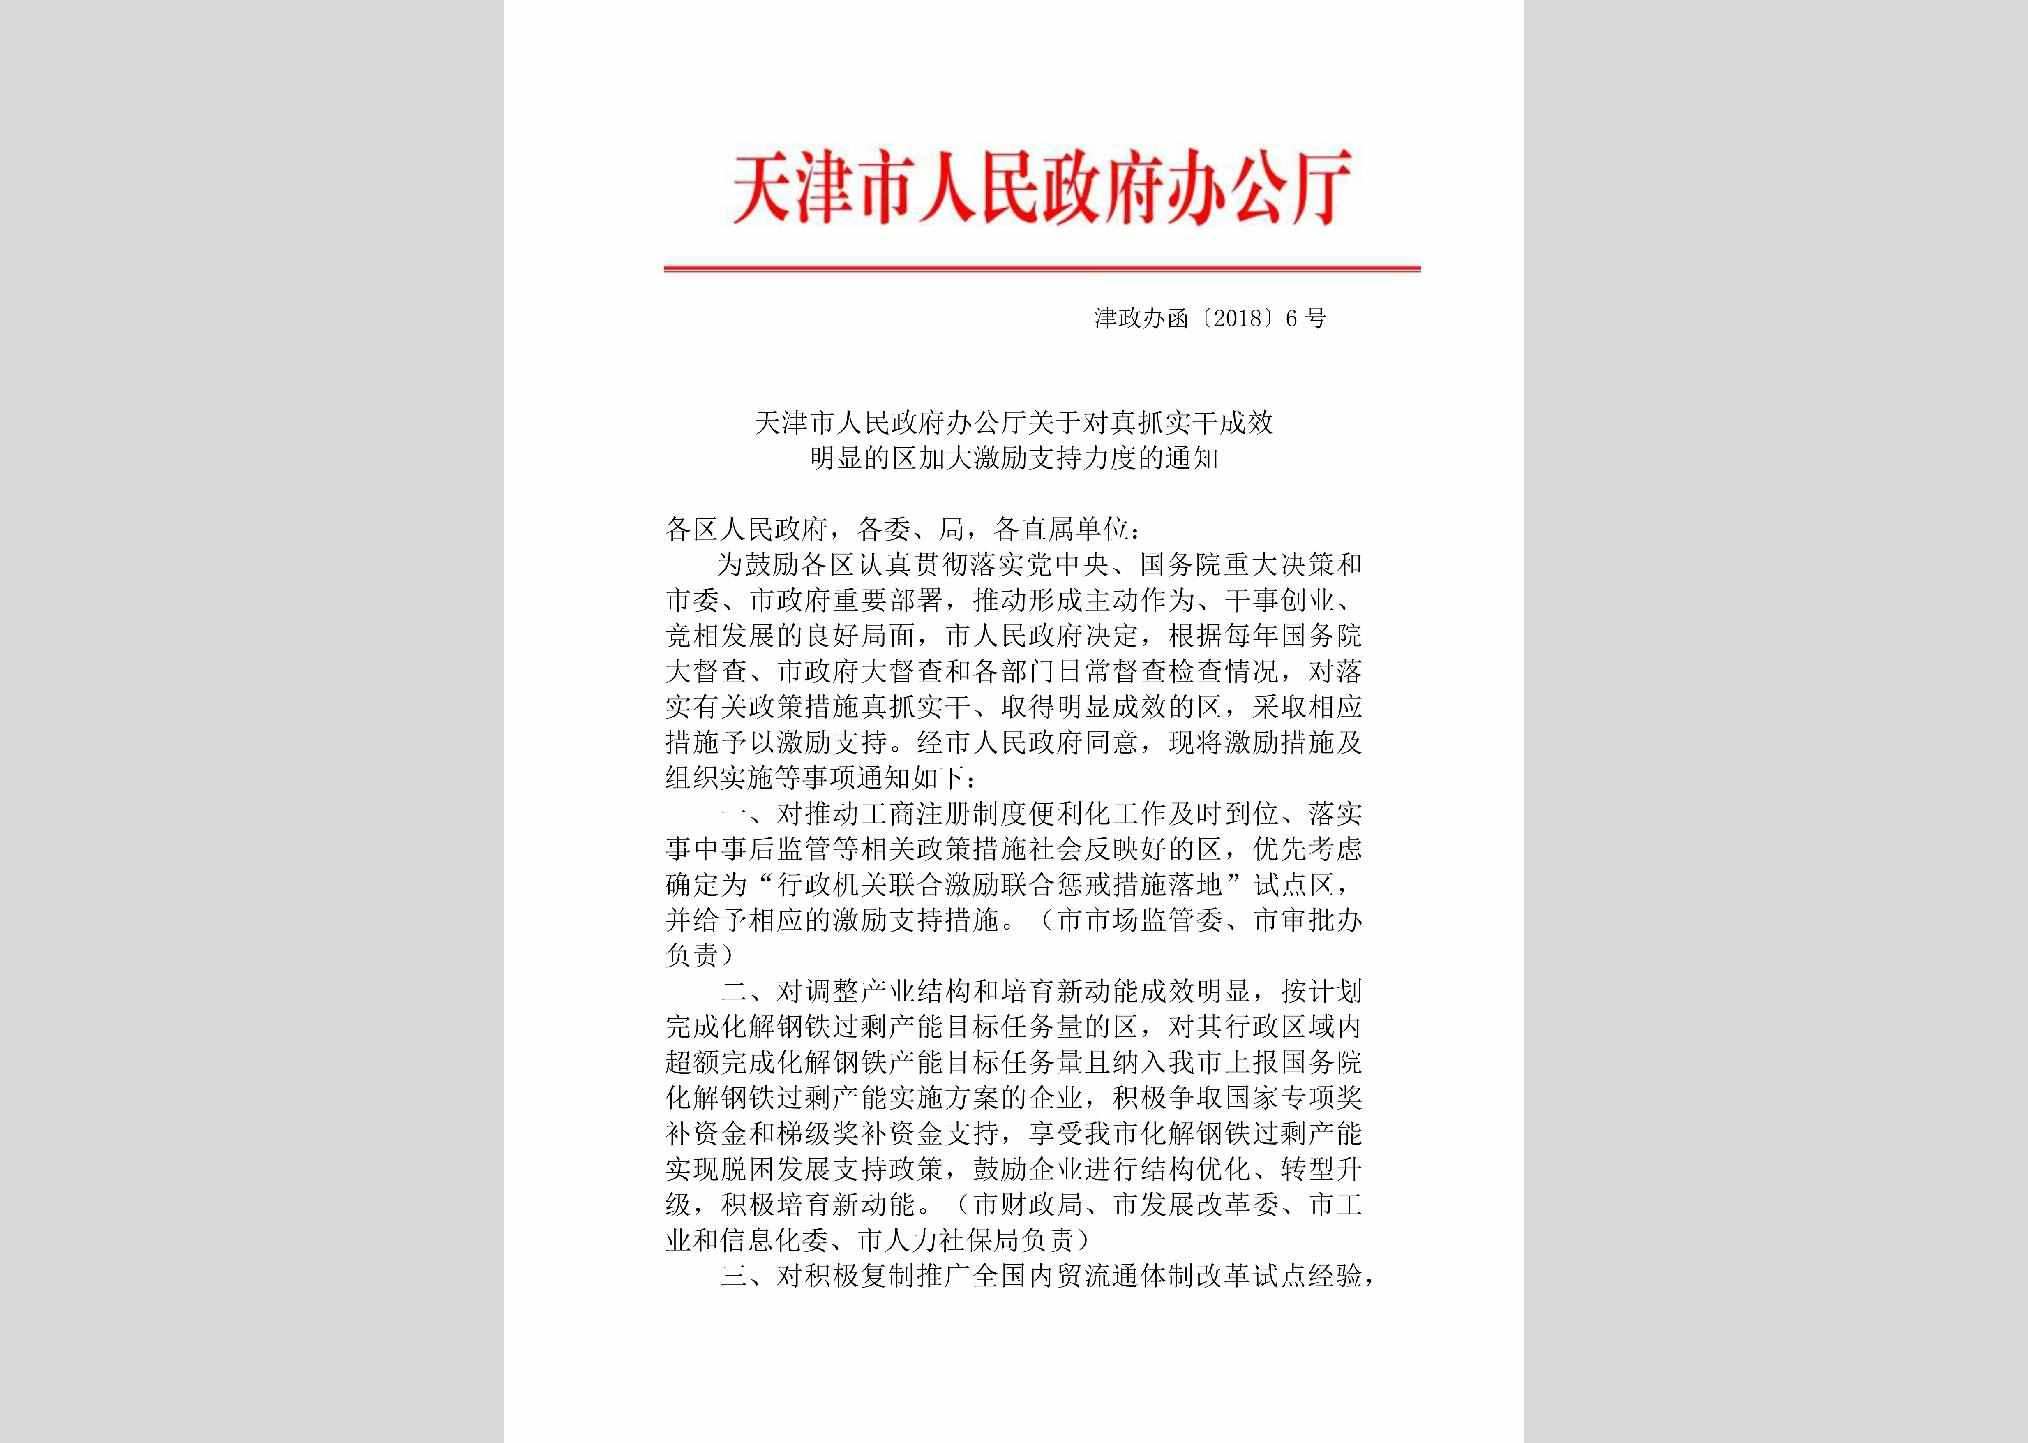 津政办函[2018]6号：天津市人民政府办公厅关于对真抓实干成效明显的区加大激励支持力度的通知